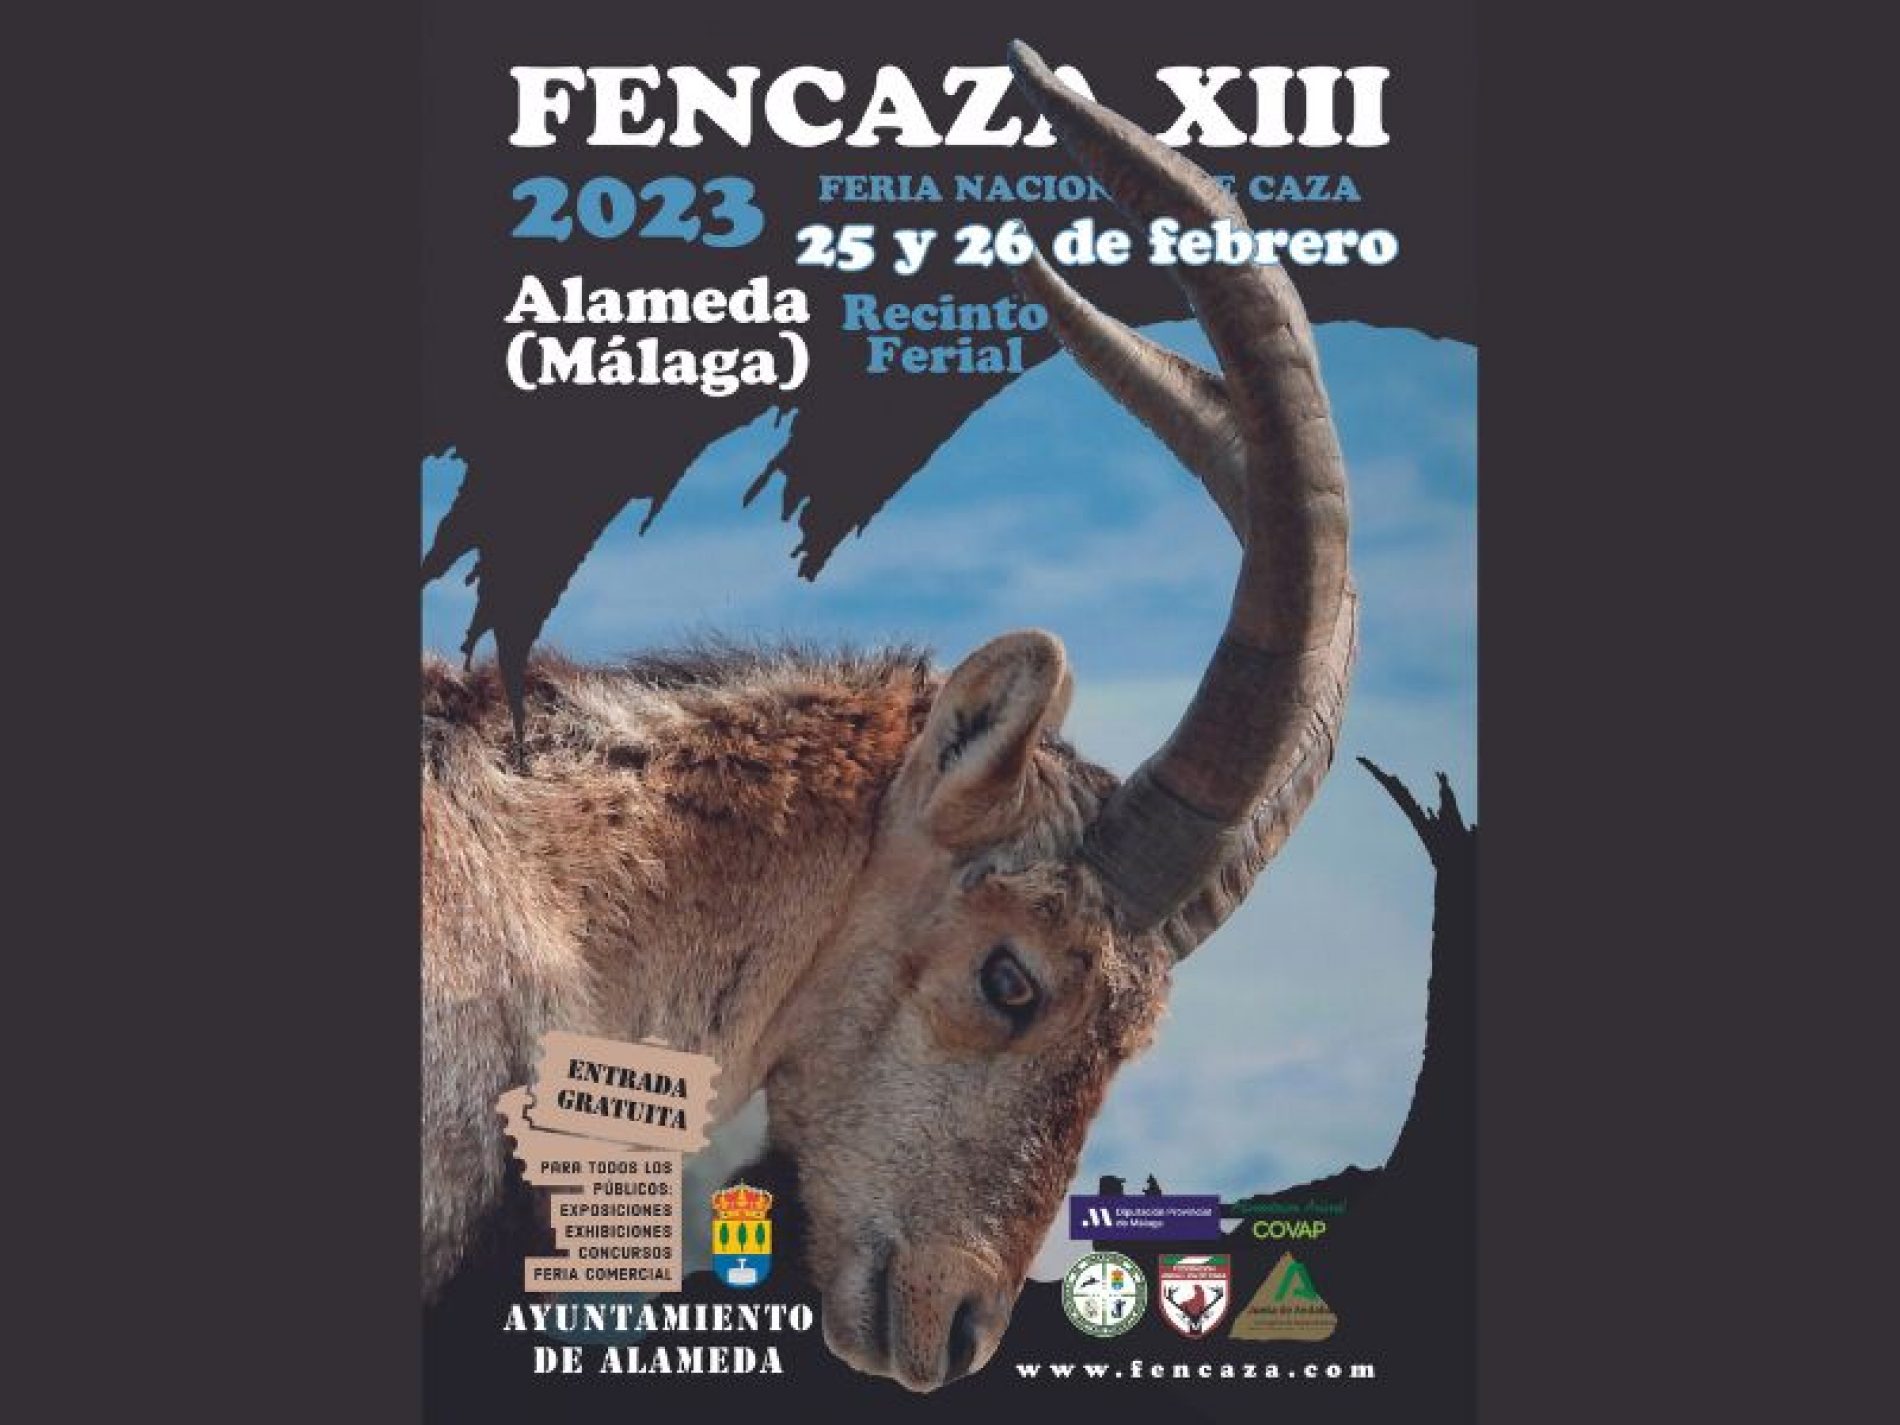 Vuelve FENCAZA en su XIII Edición